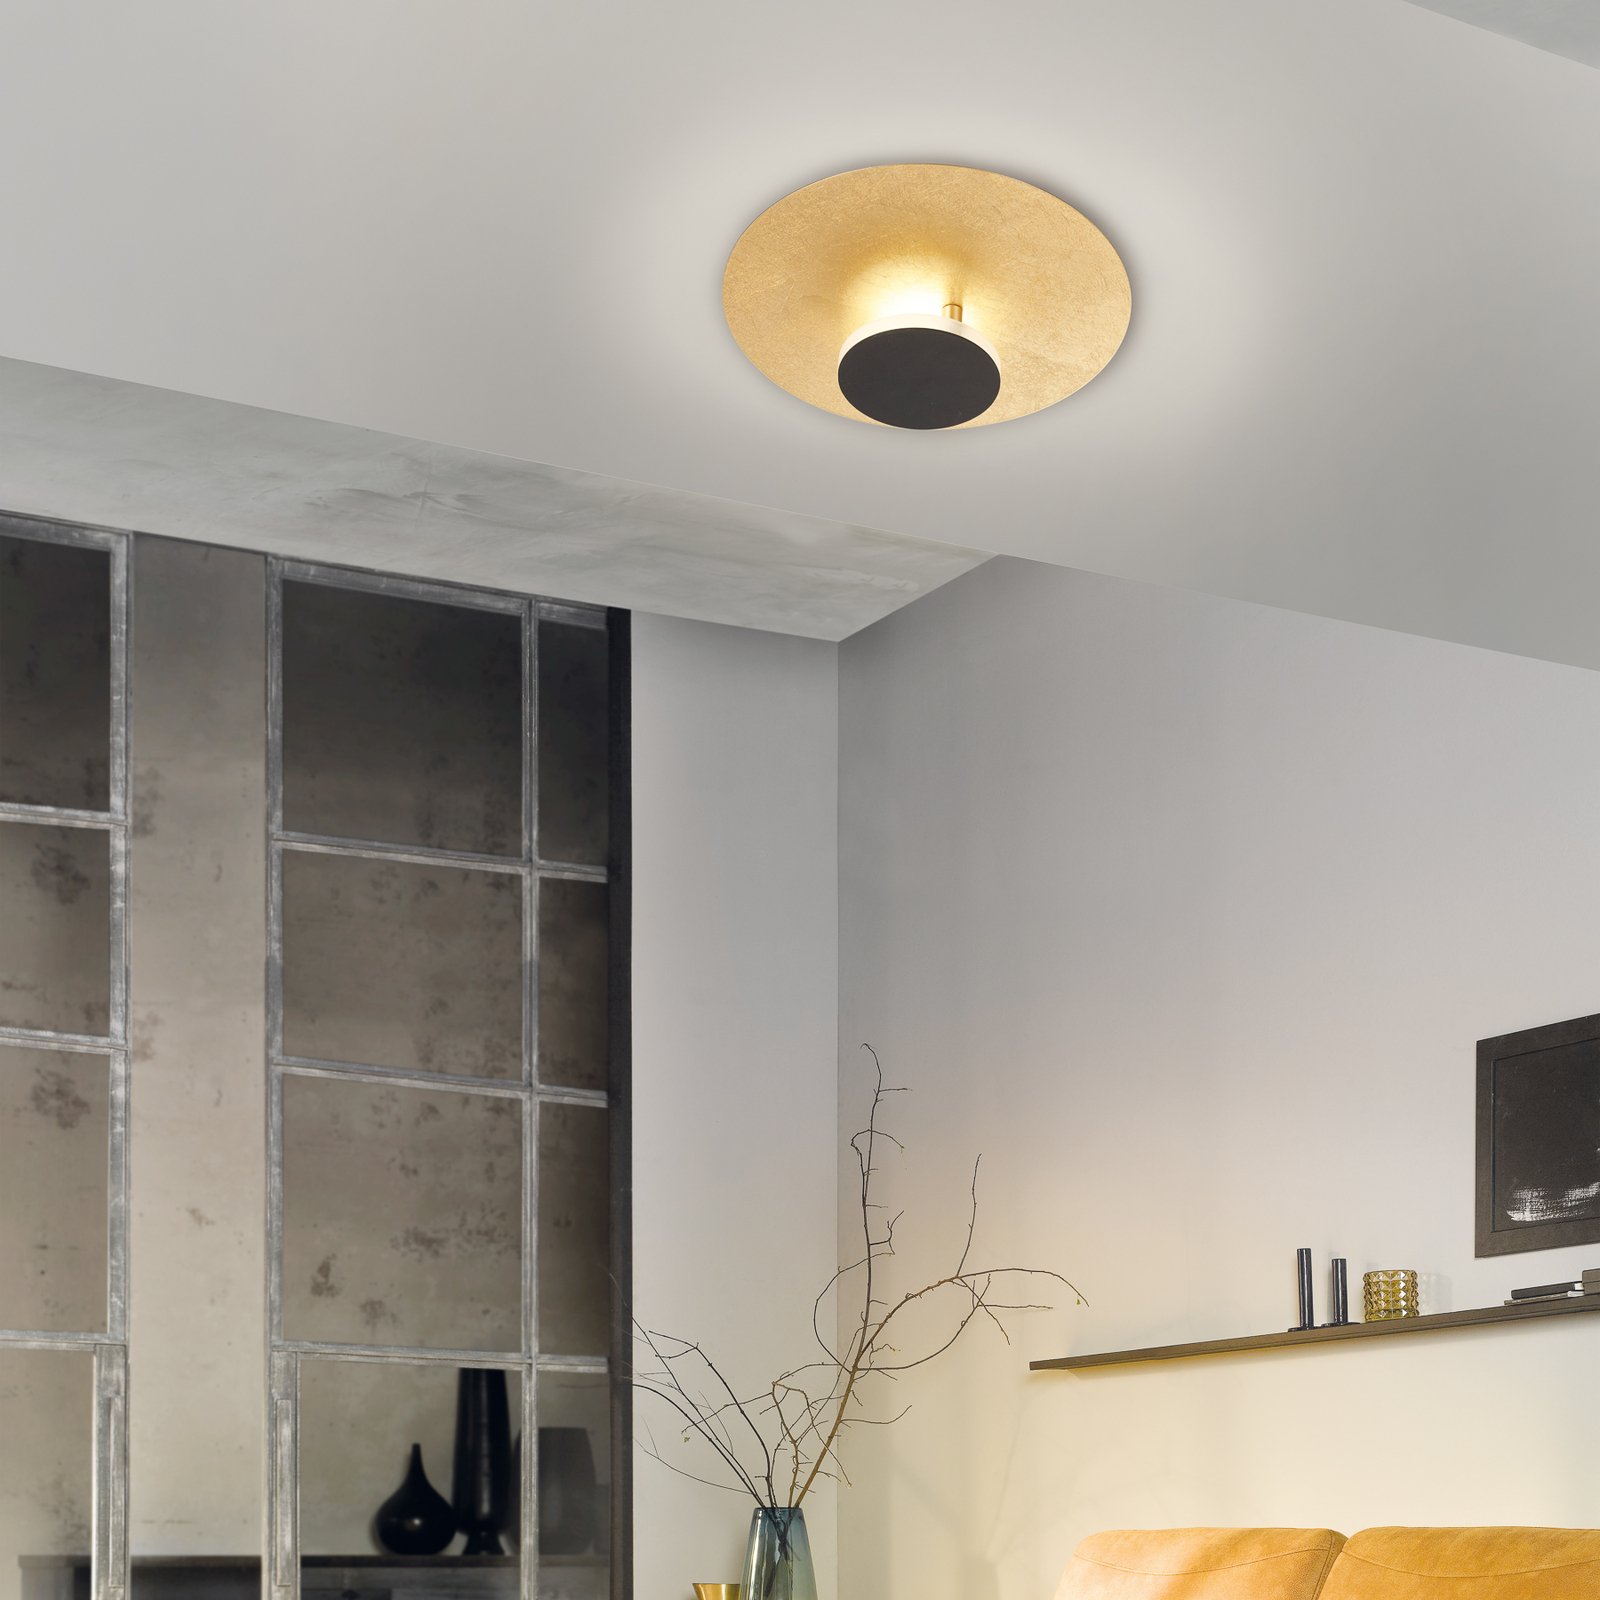 Planet LED ceiling lamp indirect Ø 30cm gold/black